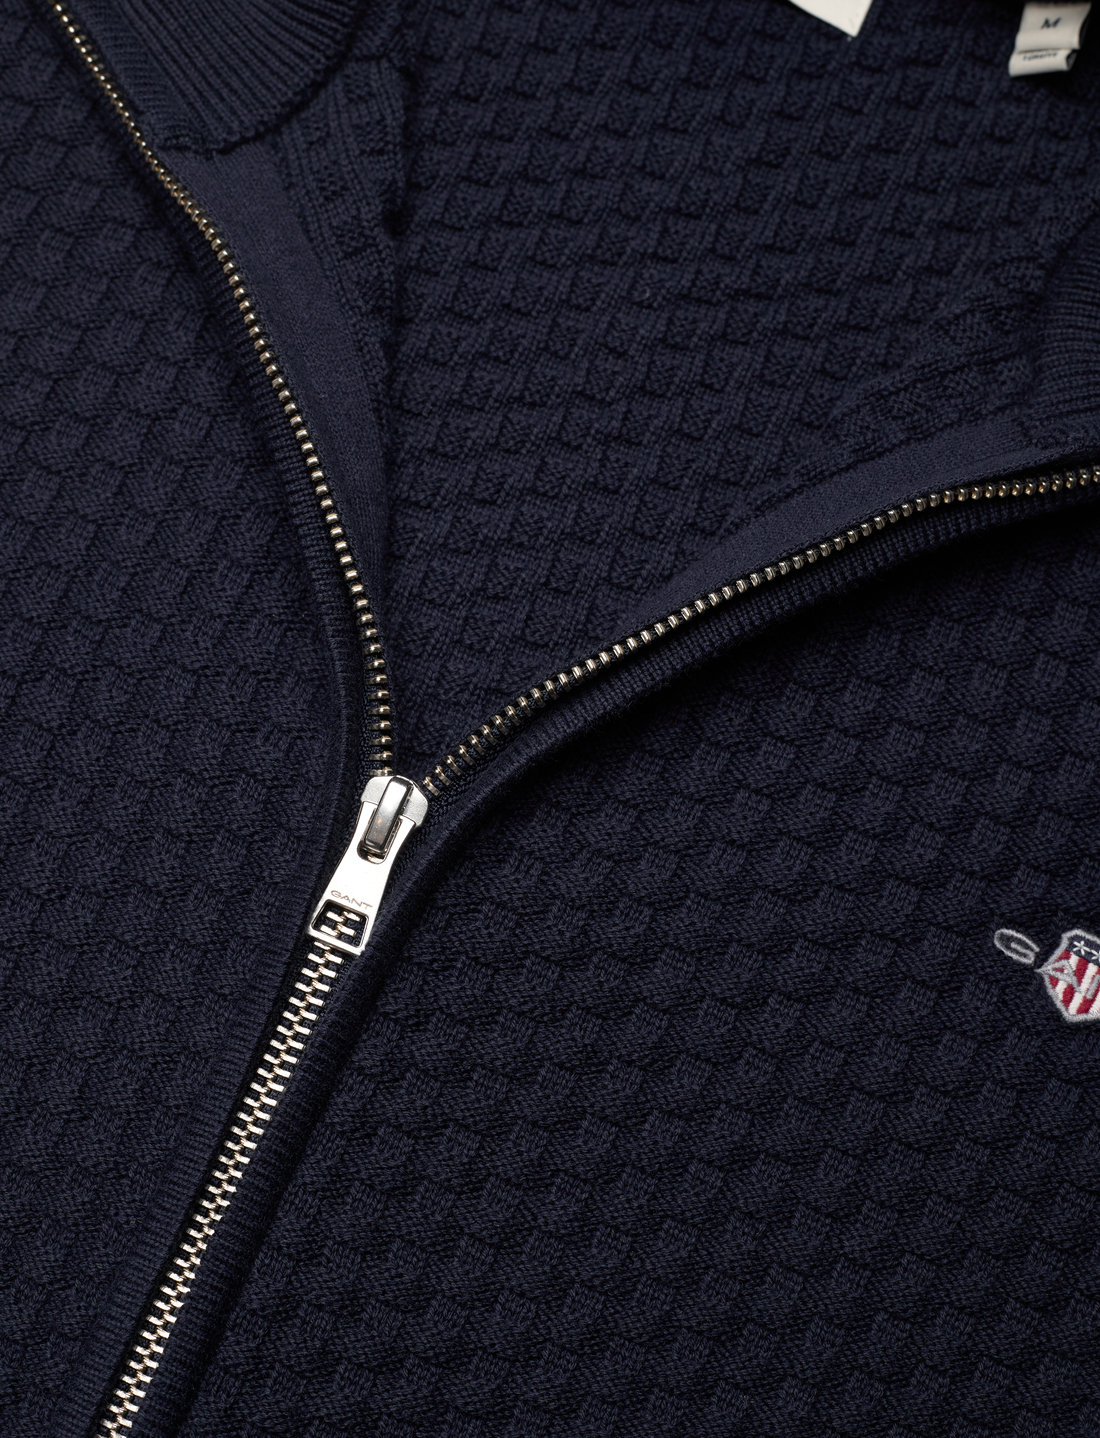 GANT Cotton Texture Zip Cardigan – strickmode – einkaufen bei Booztlet